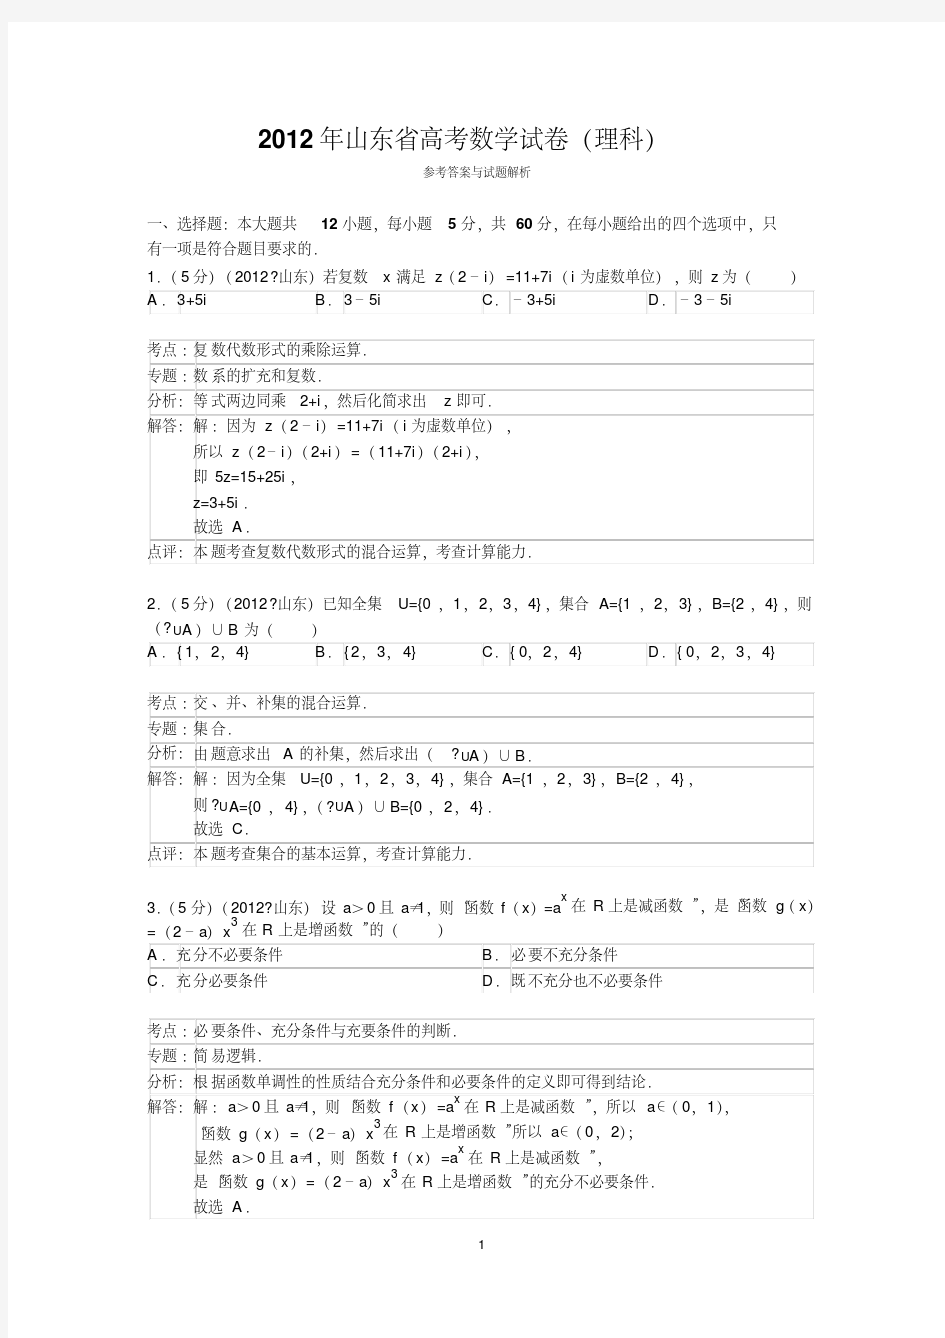 2012年山东省高考数学试卷(理科)答案与解析-精选.pdf